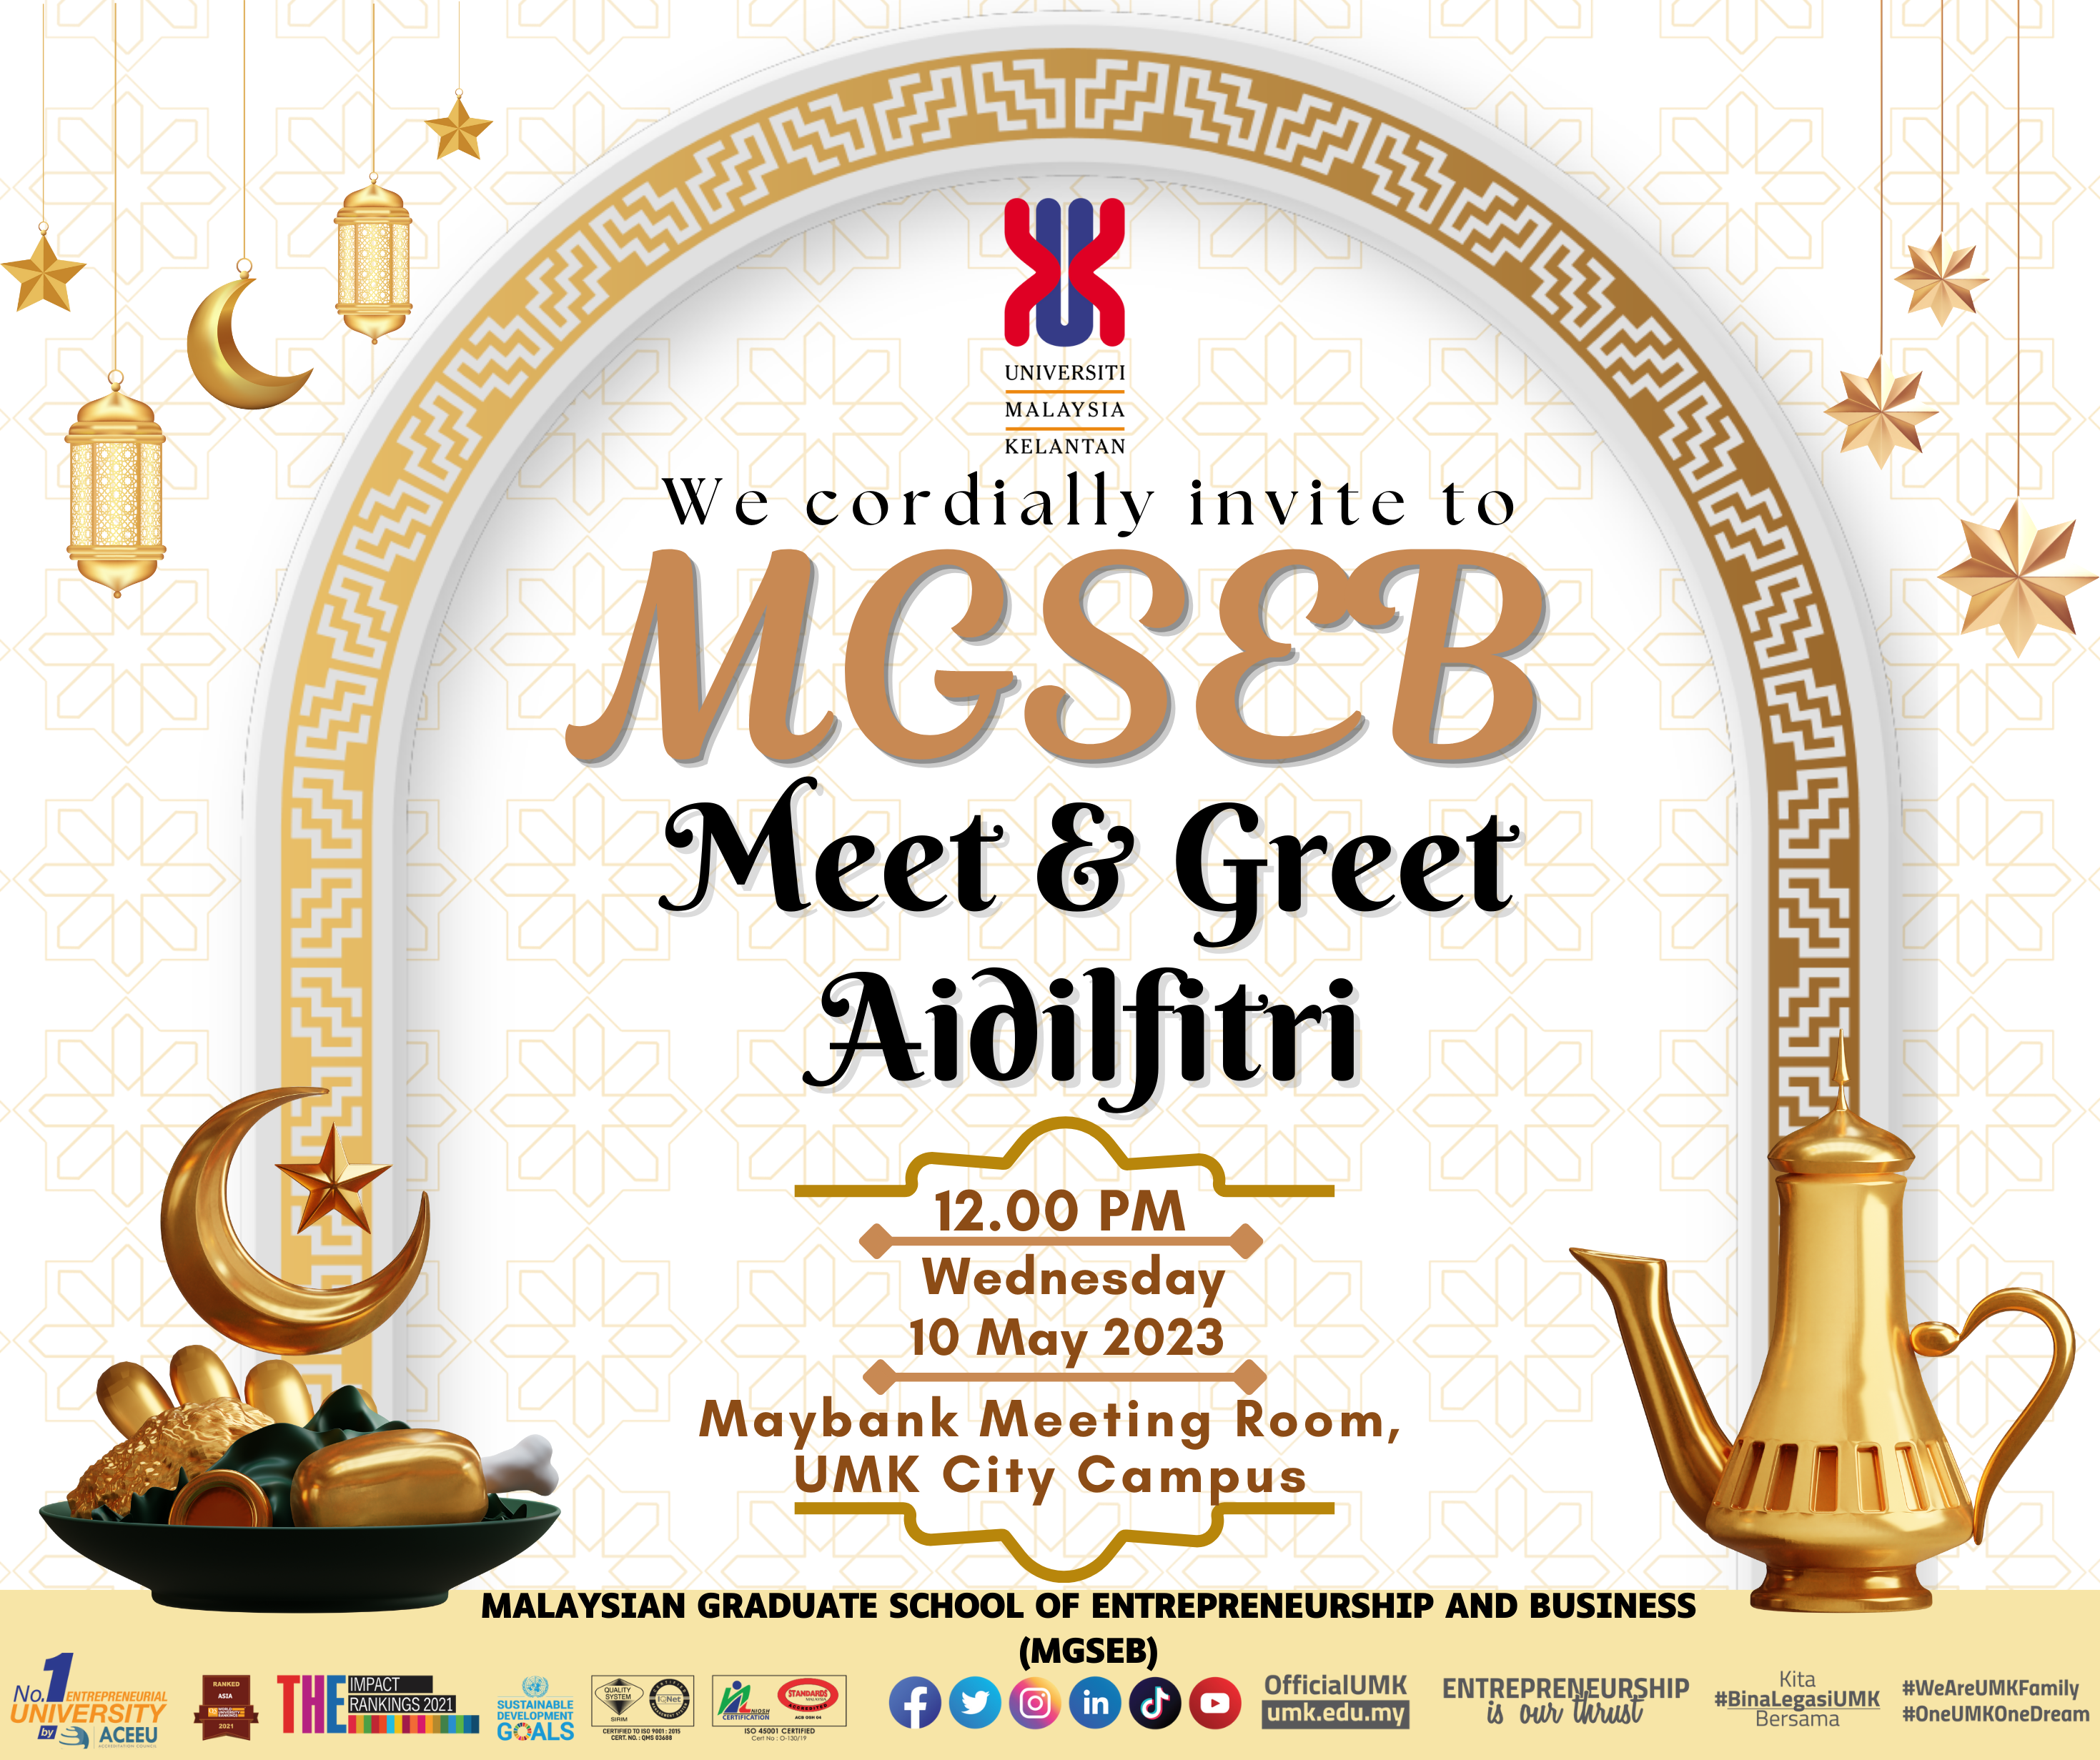 MGSEB: Meet & Greet Aidilfitri